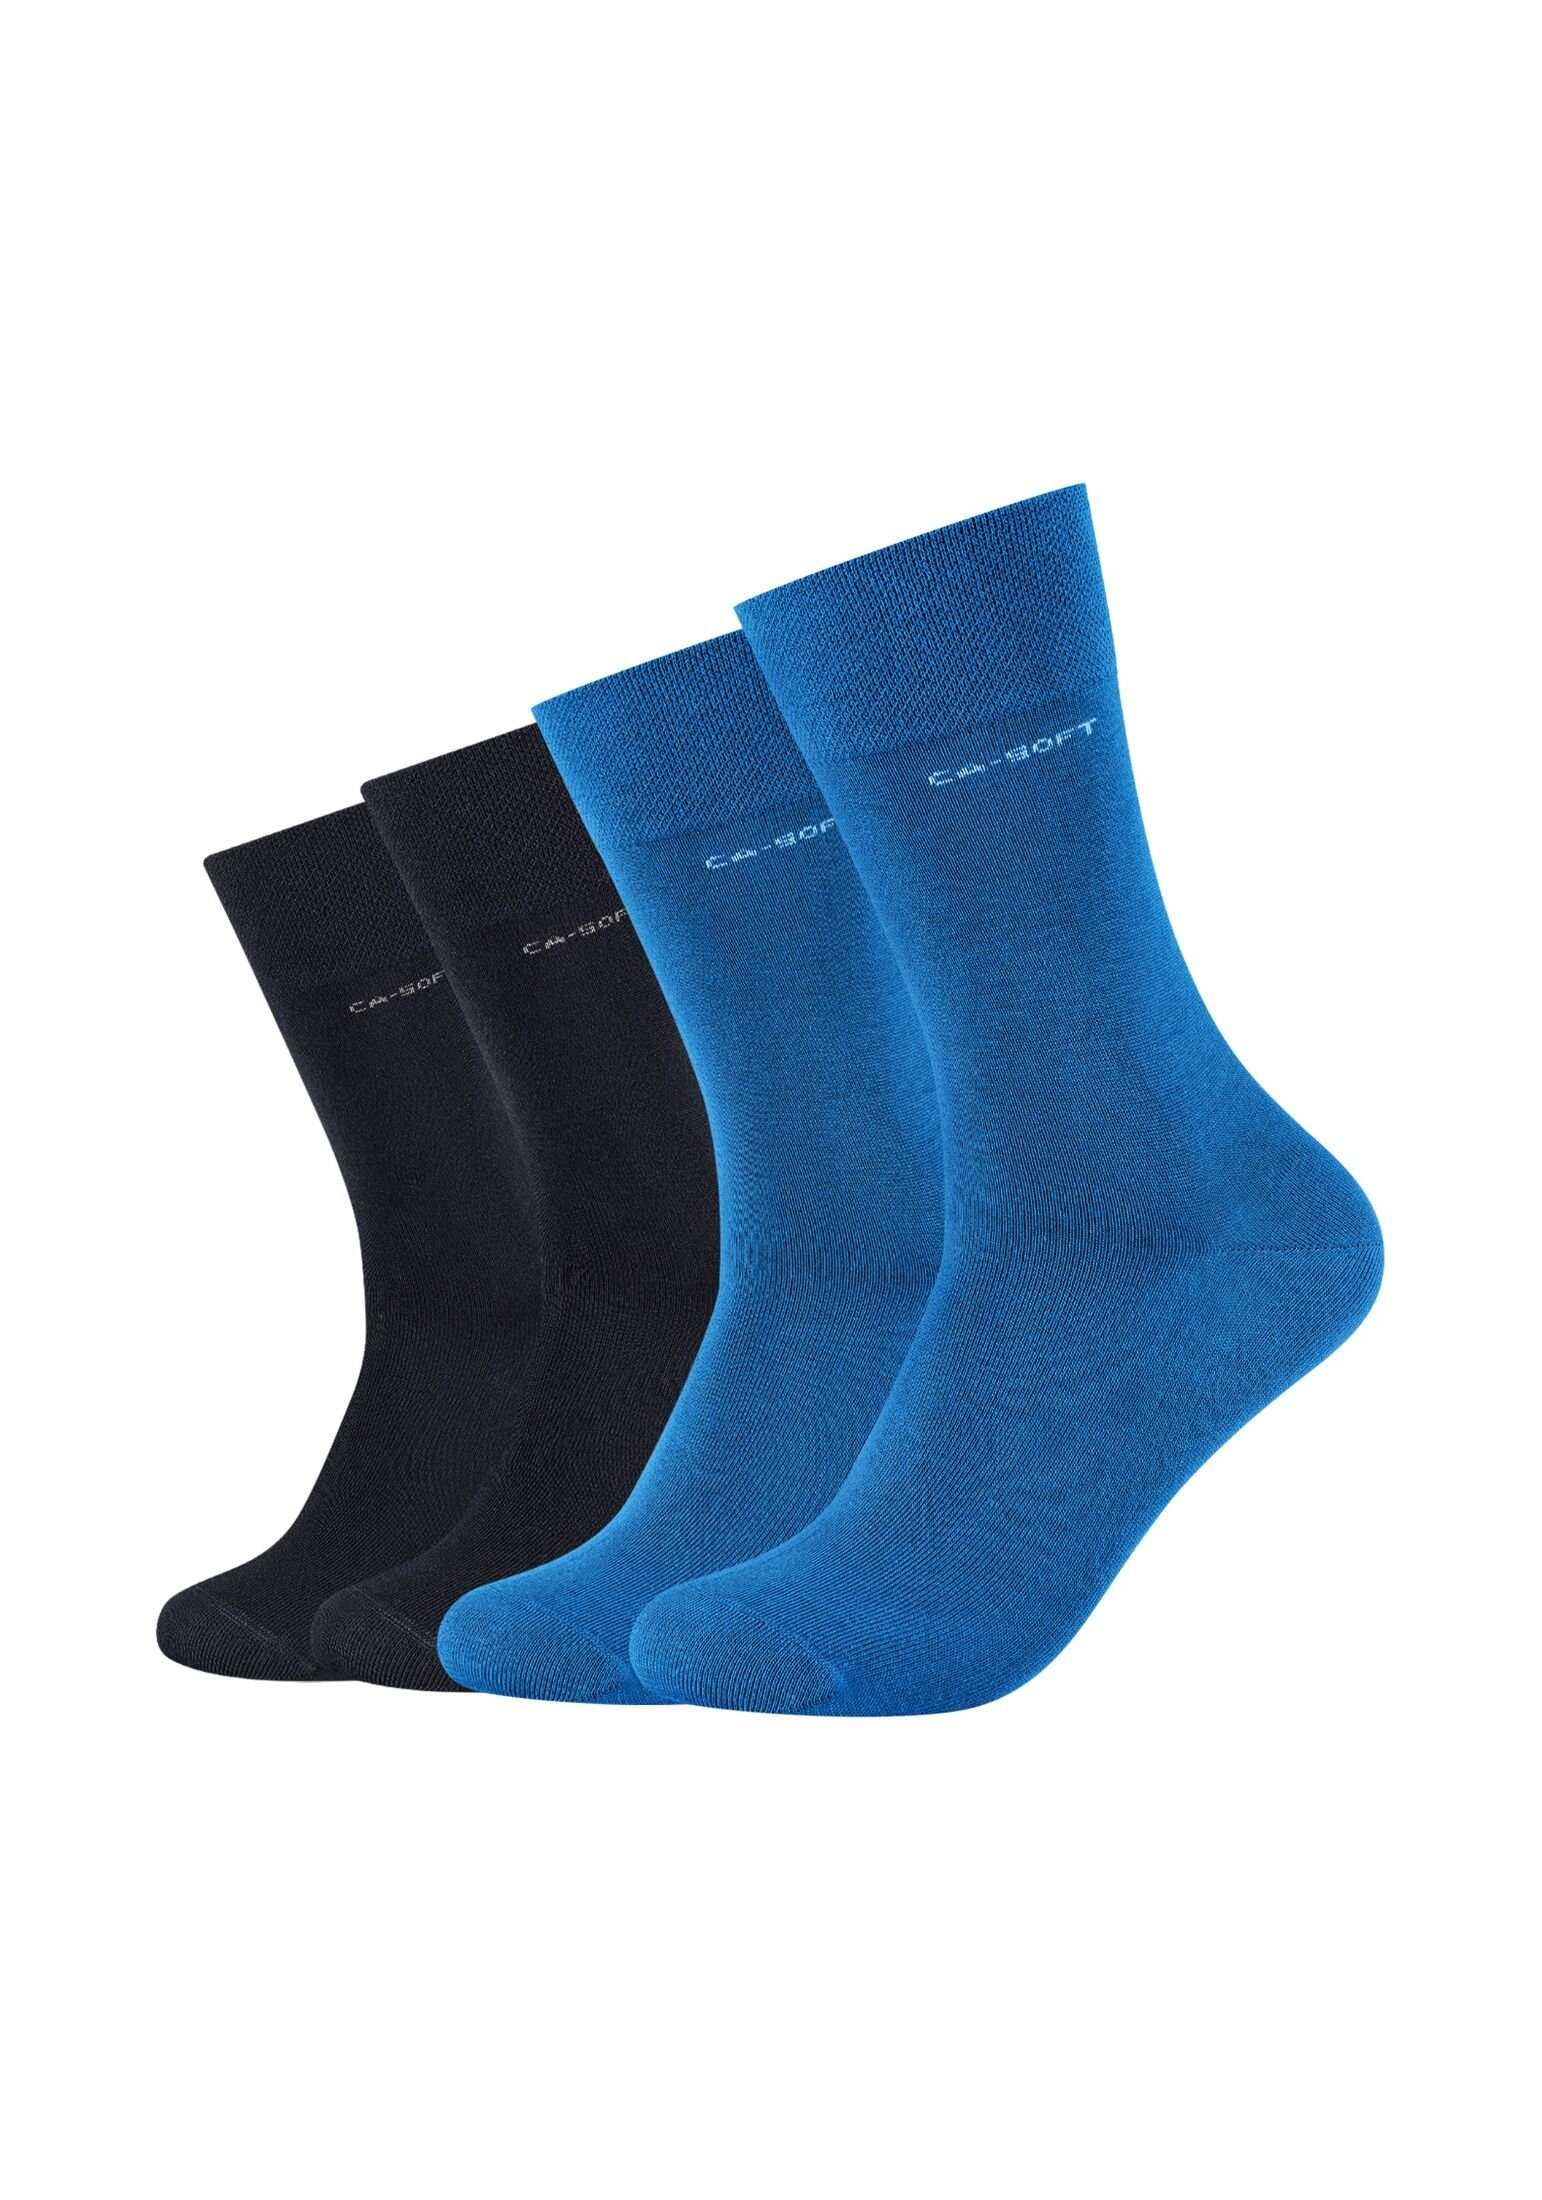 Camano Socken Socken für Damen und Herren Businesssocken Komfortbund Bequem daphne